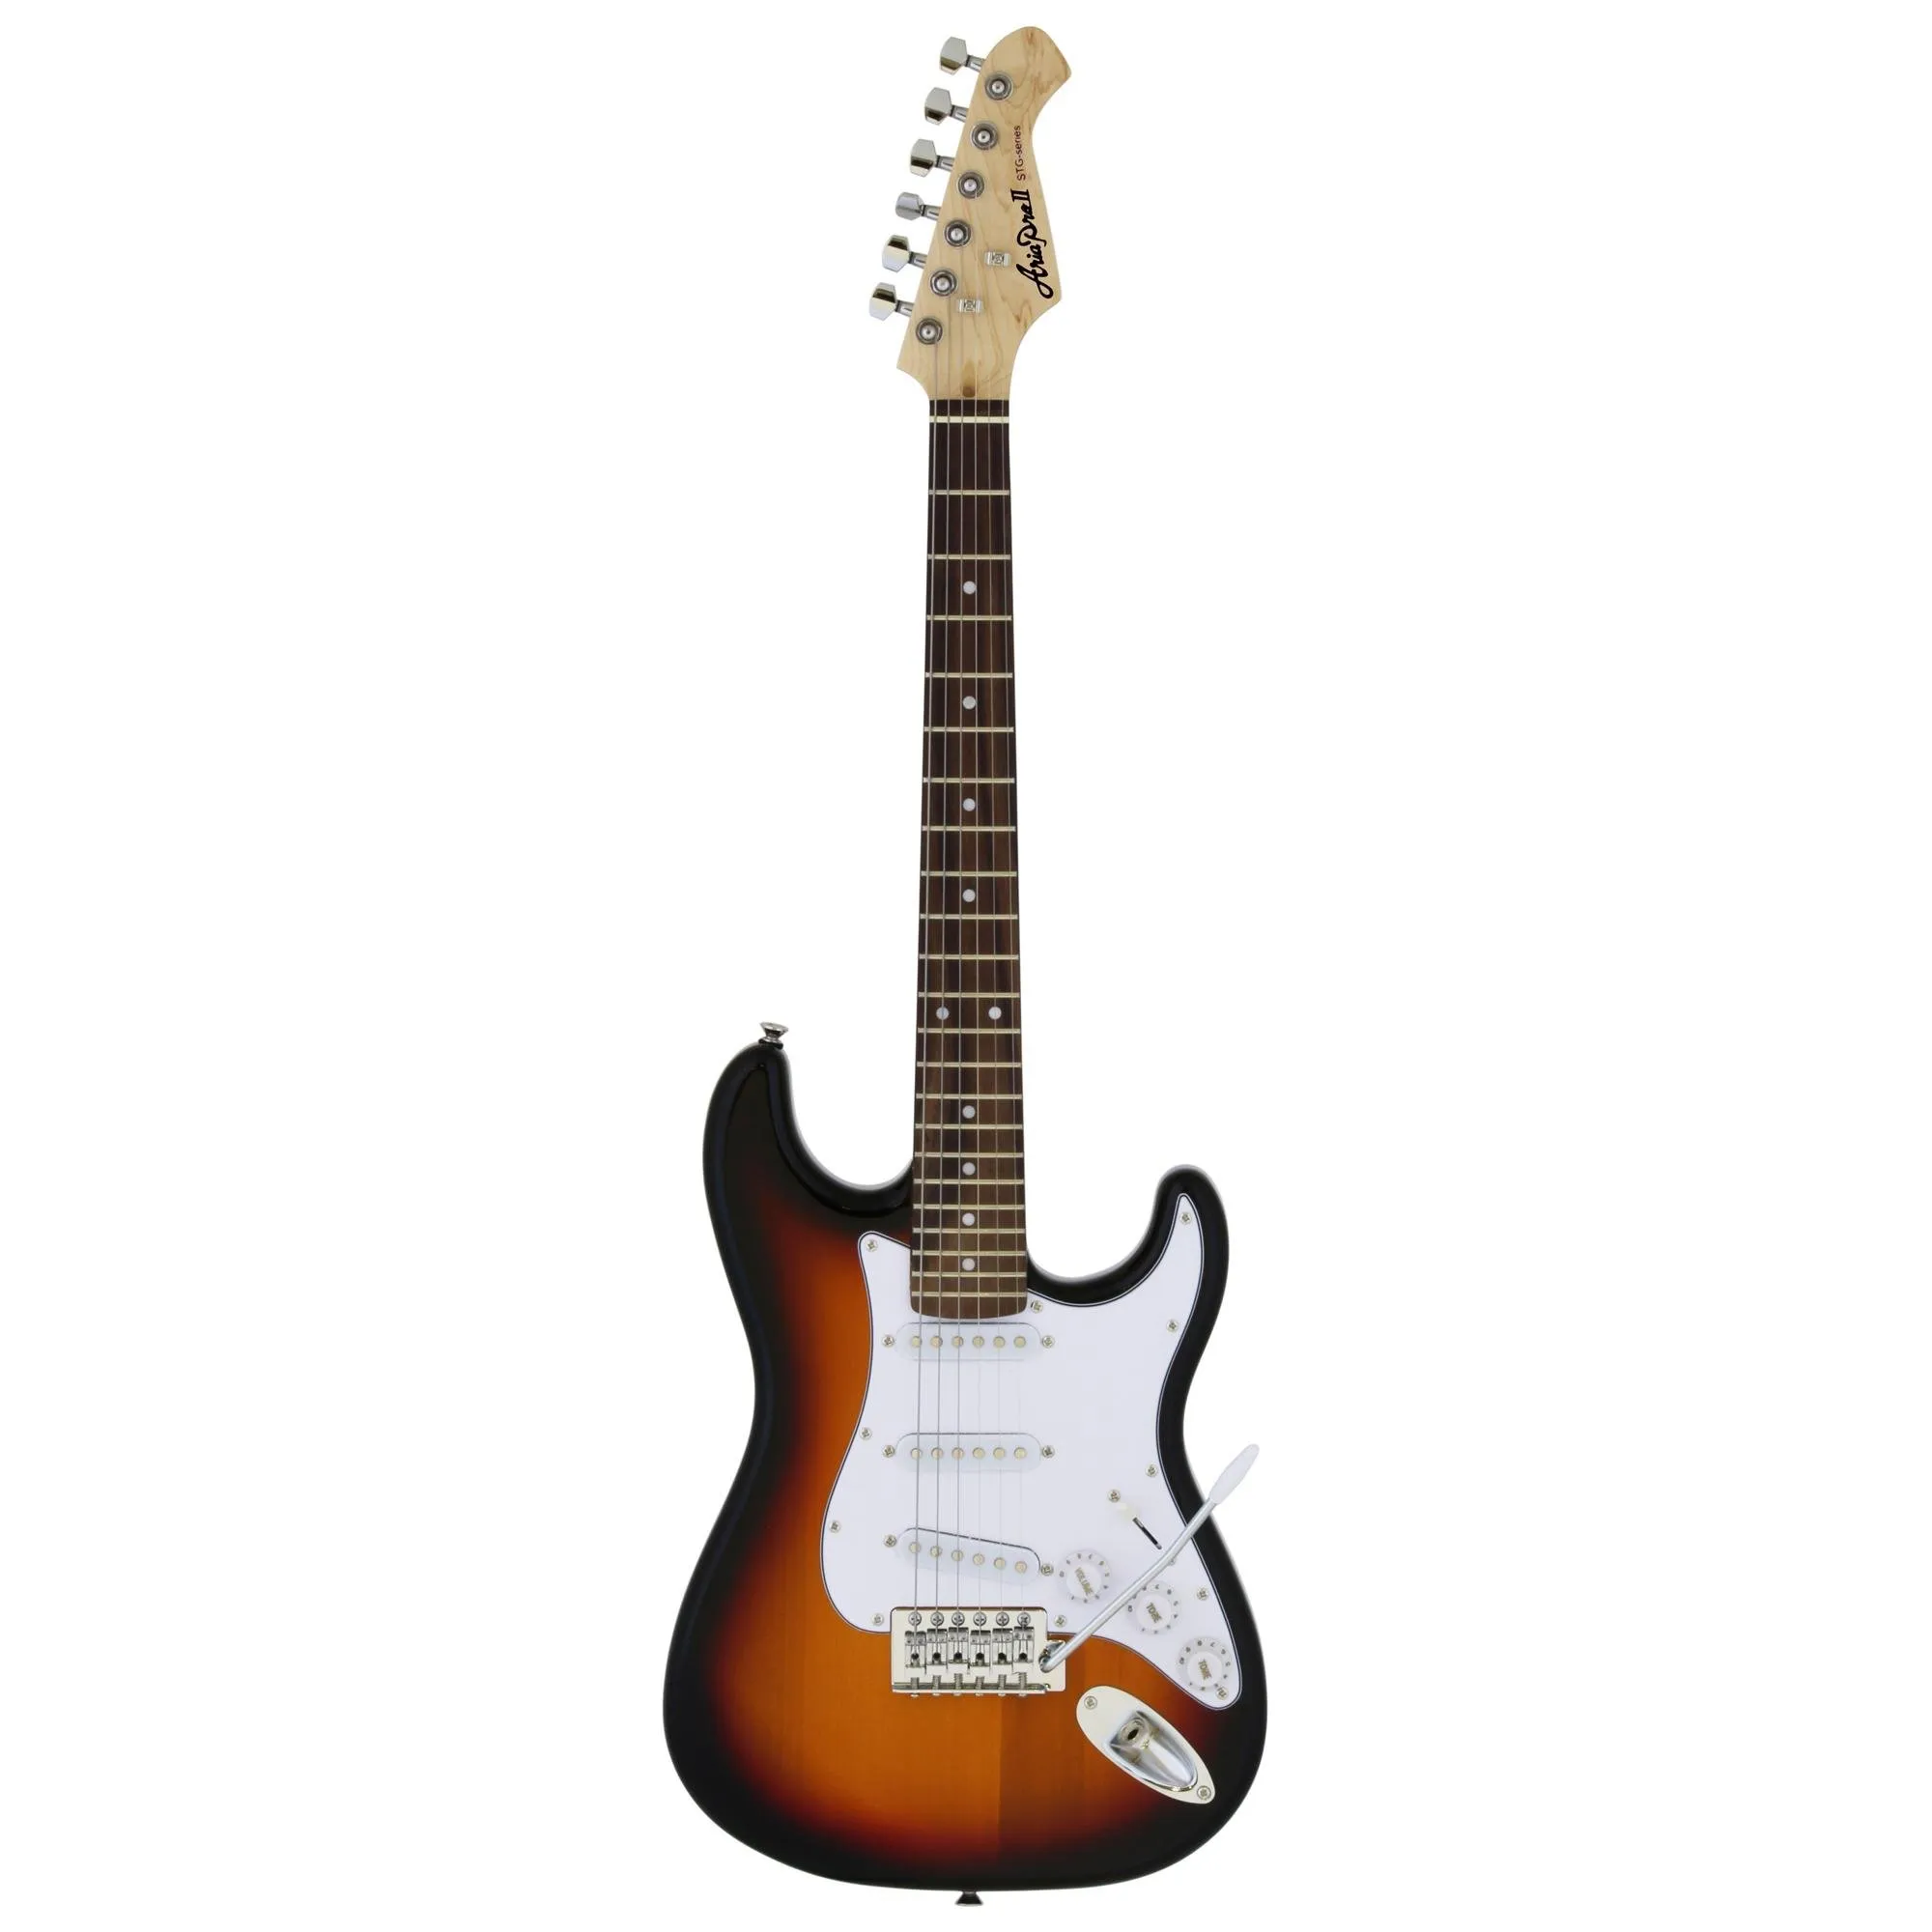 Guitarra Aria STG-Mini 3 Tone Sunburst por 1.021,99 à vista no boleto/pix ou parcele em até 12x sem juros. Compre na loja Mundomax!